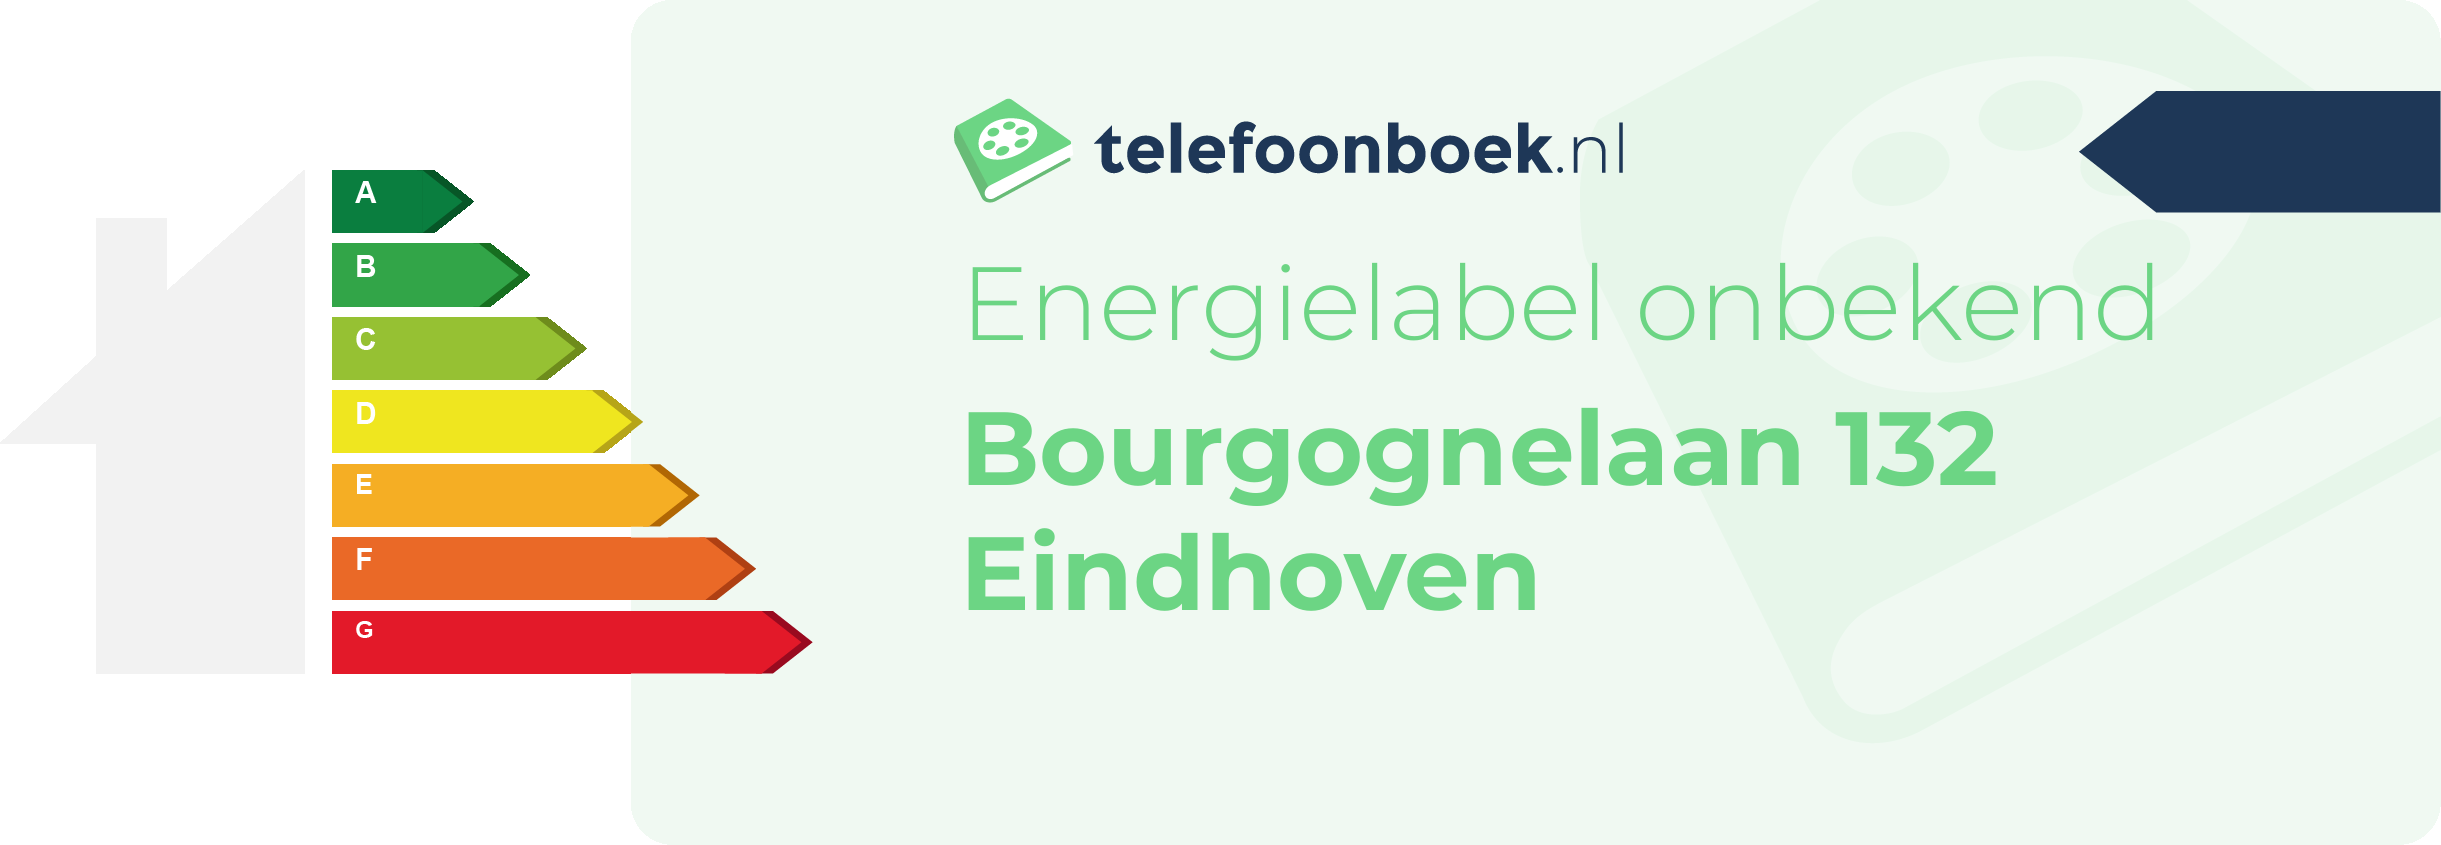 Energielabel Bourgognelaan 132 Eindhoven